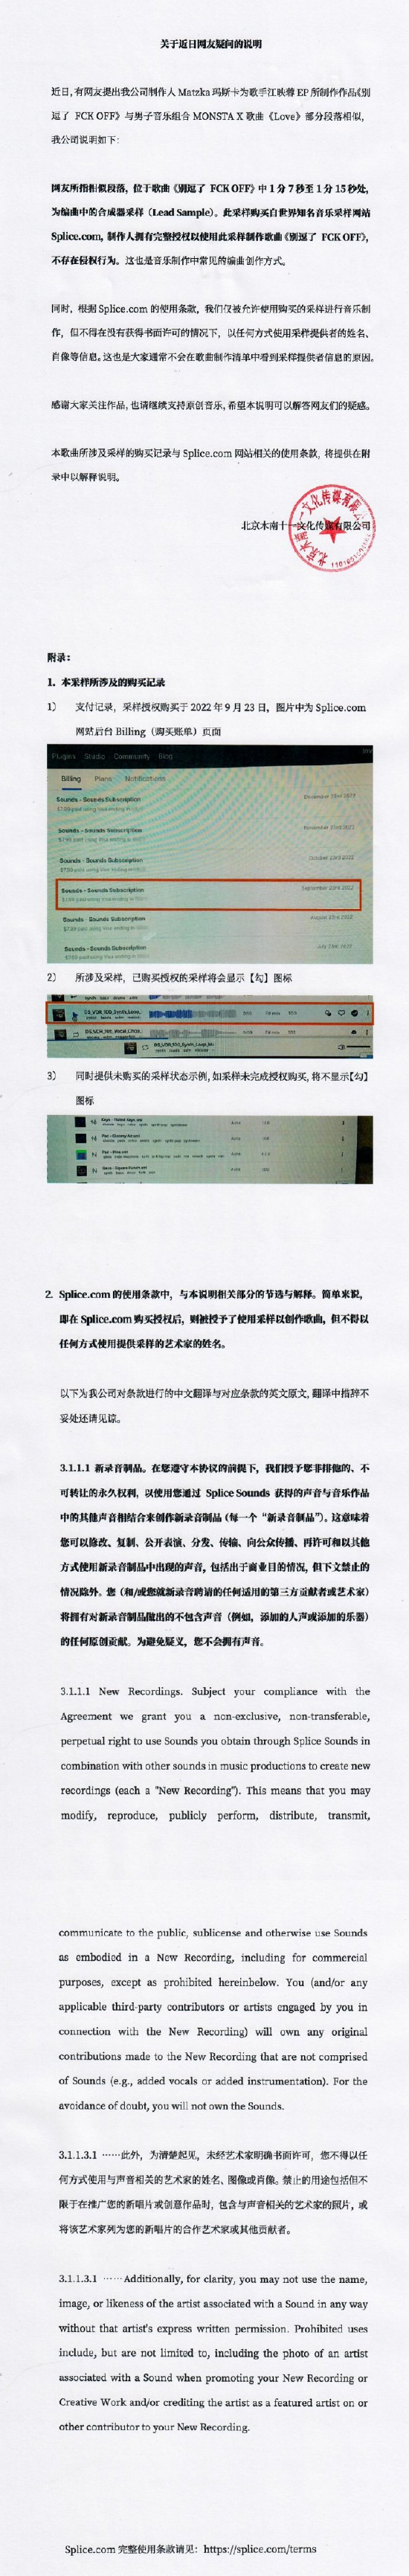 江映蓉方否认新歌抄袭 称是网站购买的版权采样